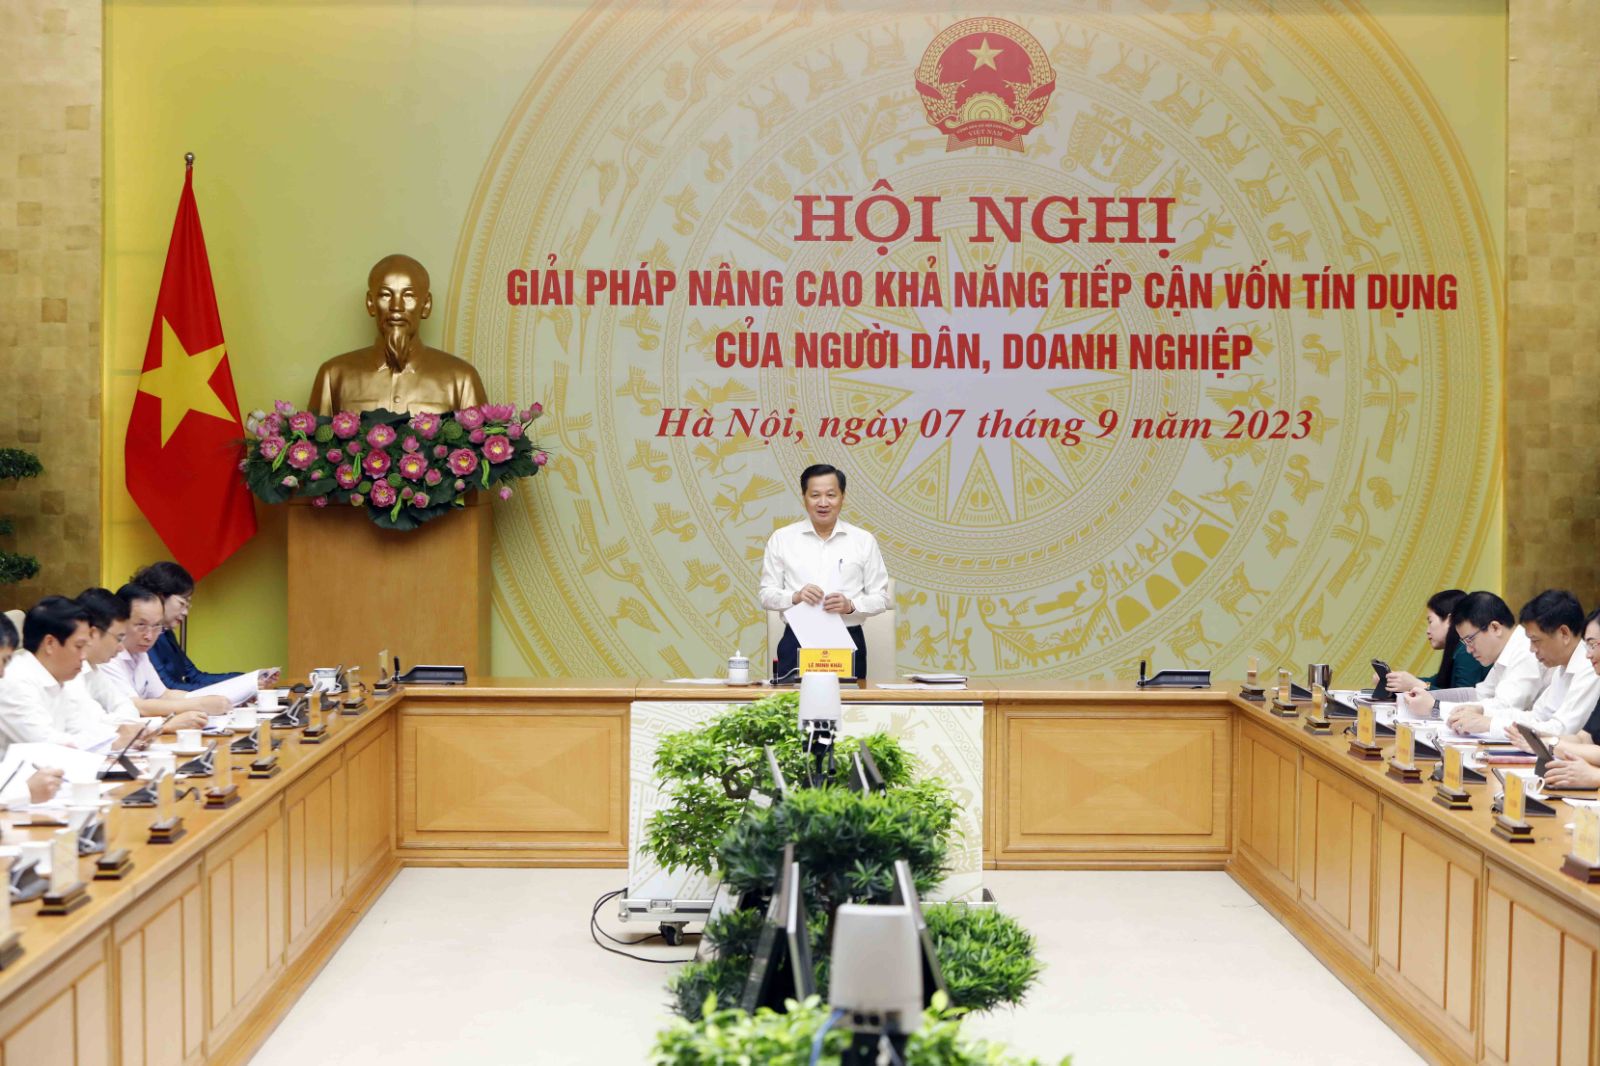 Phó Thủ tướng Lê Minh Khái chủ trì họp bàn giải pháp nâng cao khả năng tiếp cận tín dụng của người dân, doanh nghiệp - Ảnh 11.